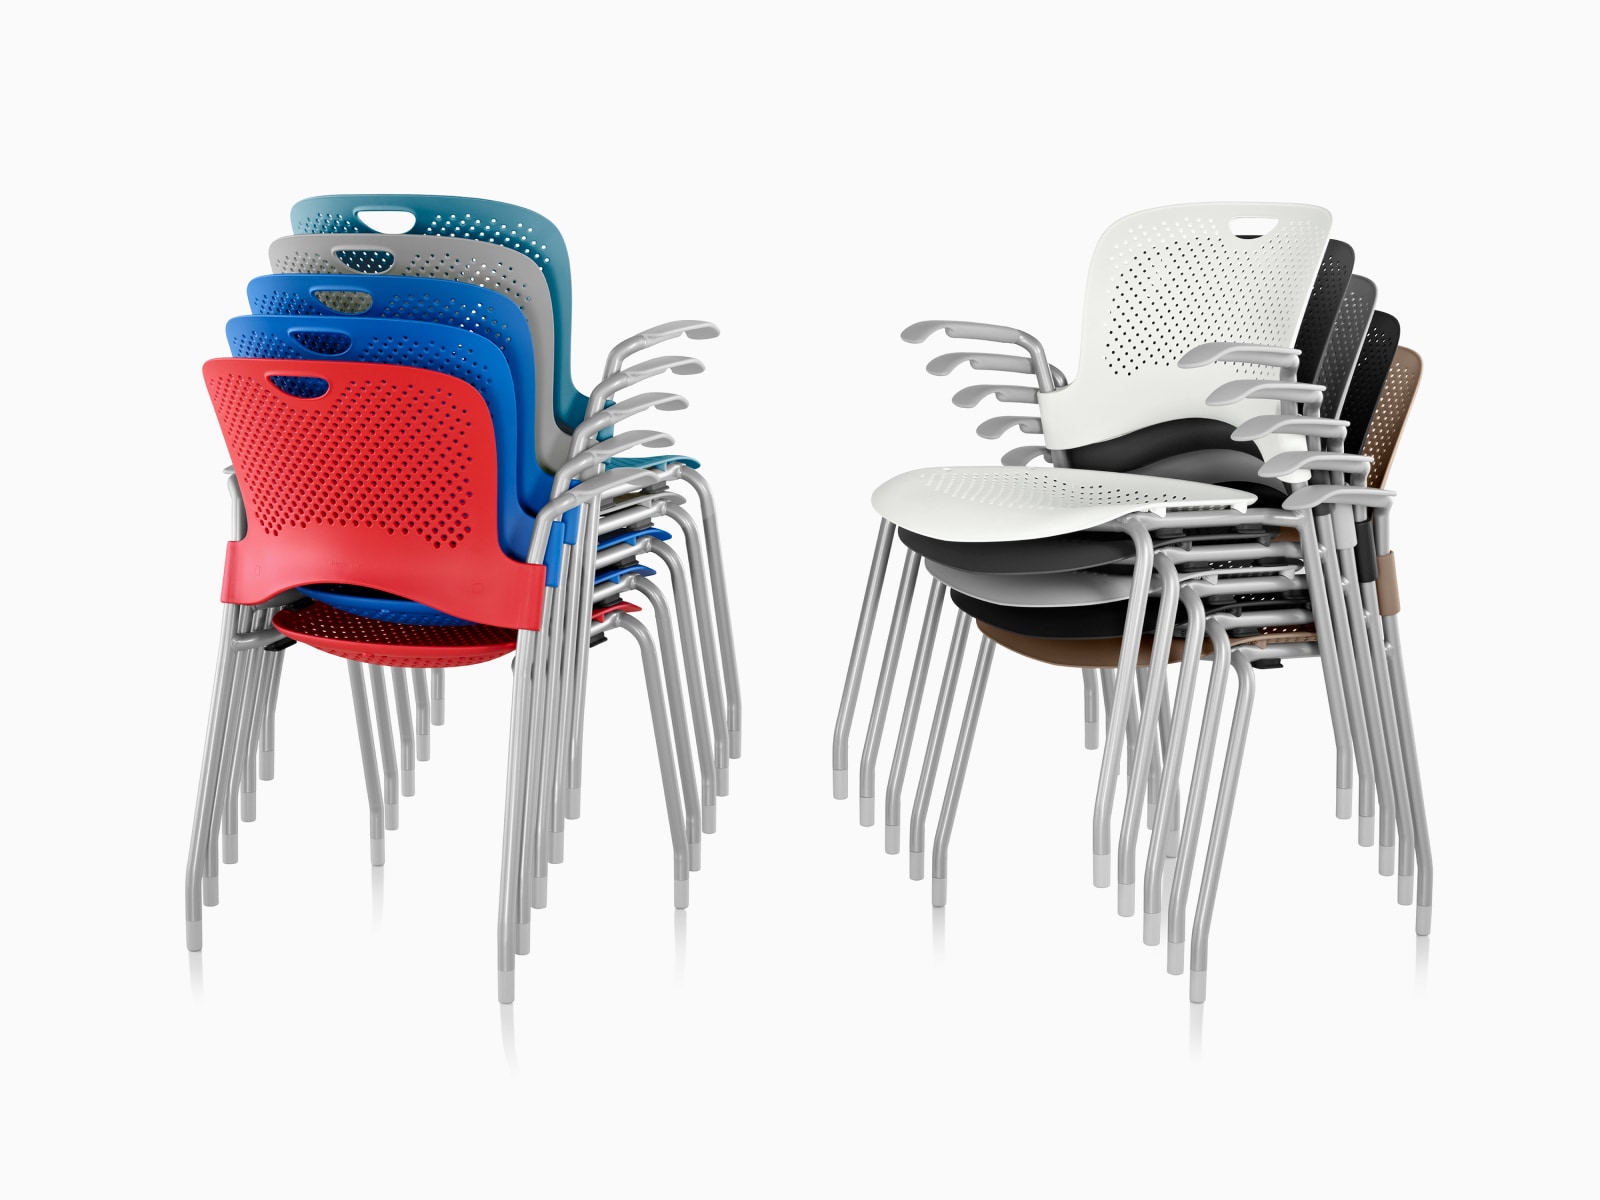 Dois conjuntos de cadeiras empilháveis Caper em várias cores, as duas empilhadas em cinco.